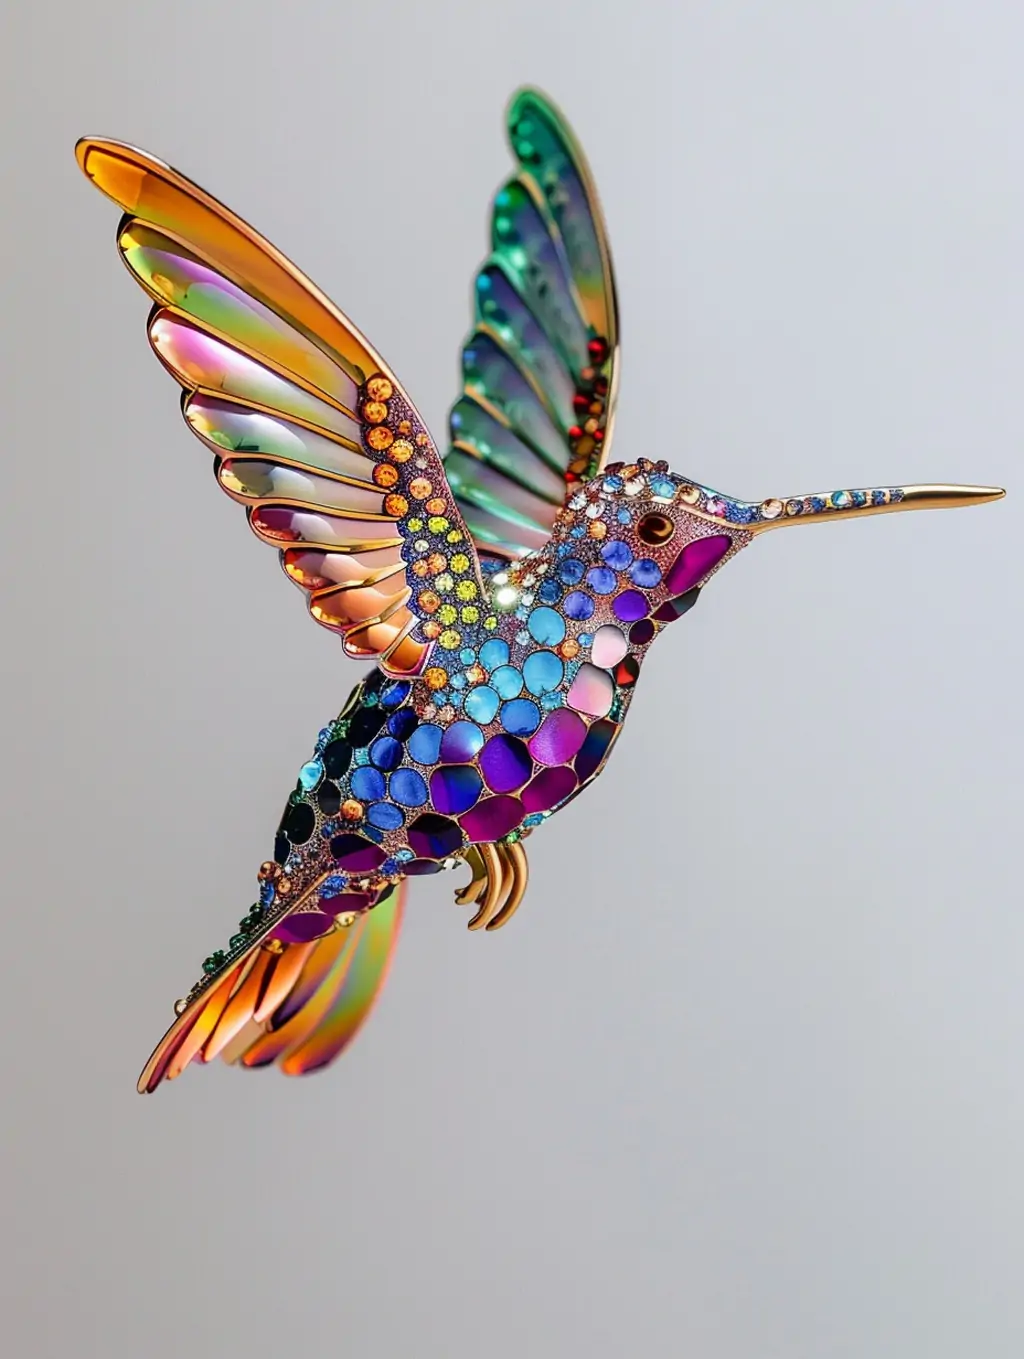 创意飞翔动物蜂鸟宝石珠宝闪光生物装饰品摄影海报midjourney关键词咒语-Ai宇宙吧-